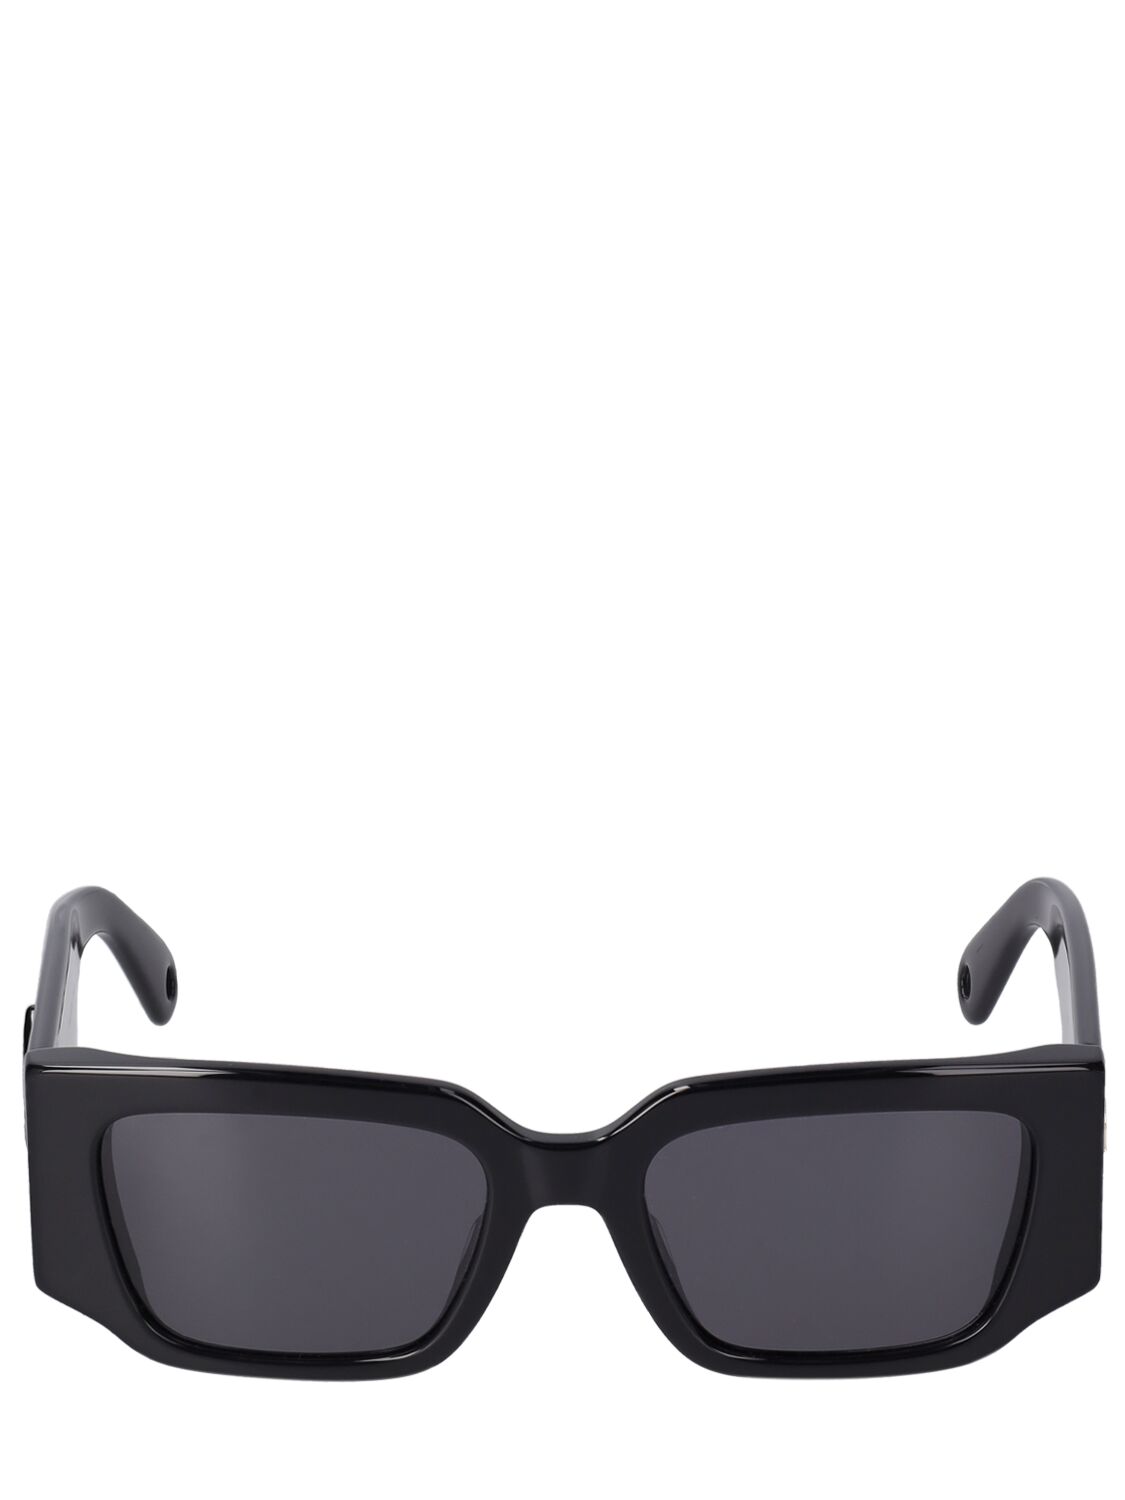 Lanvin Acetate Sunglasses In Black